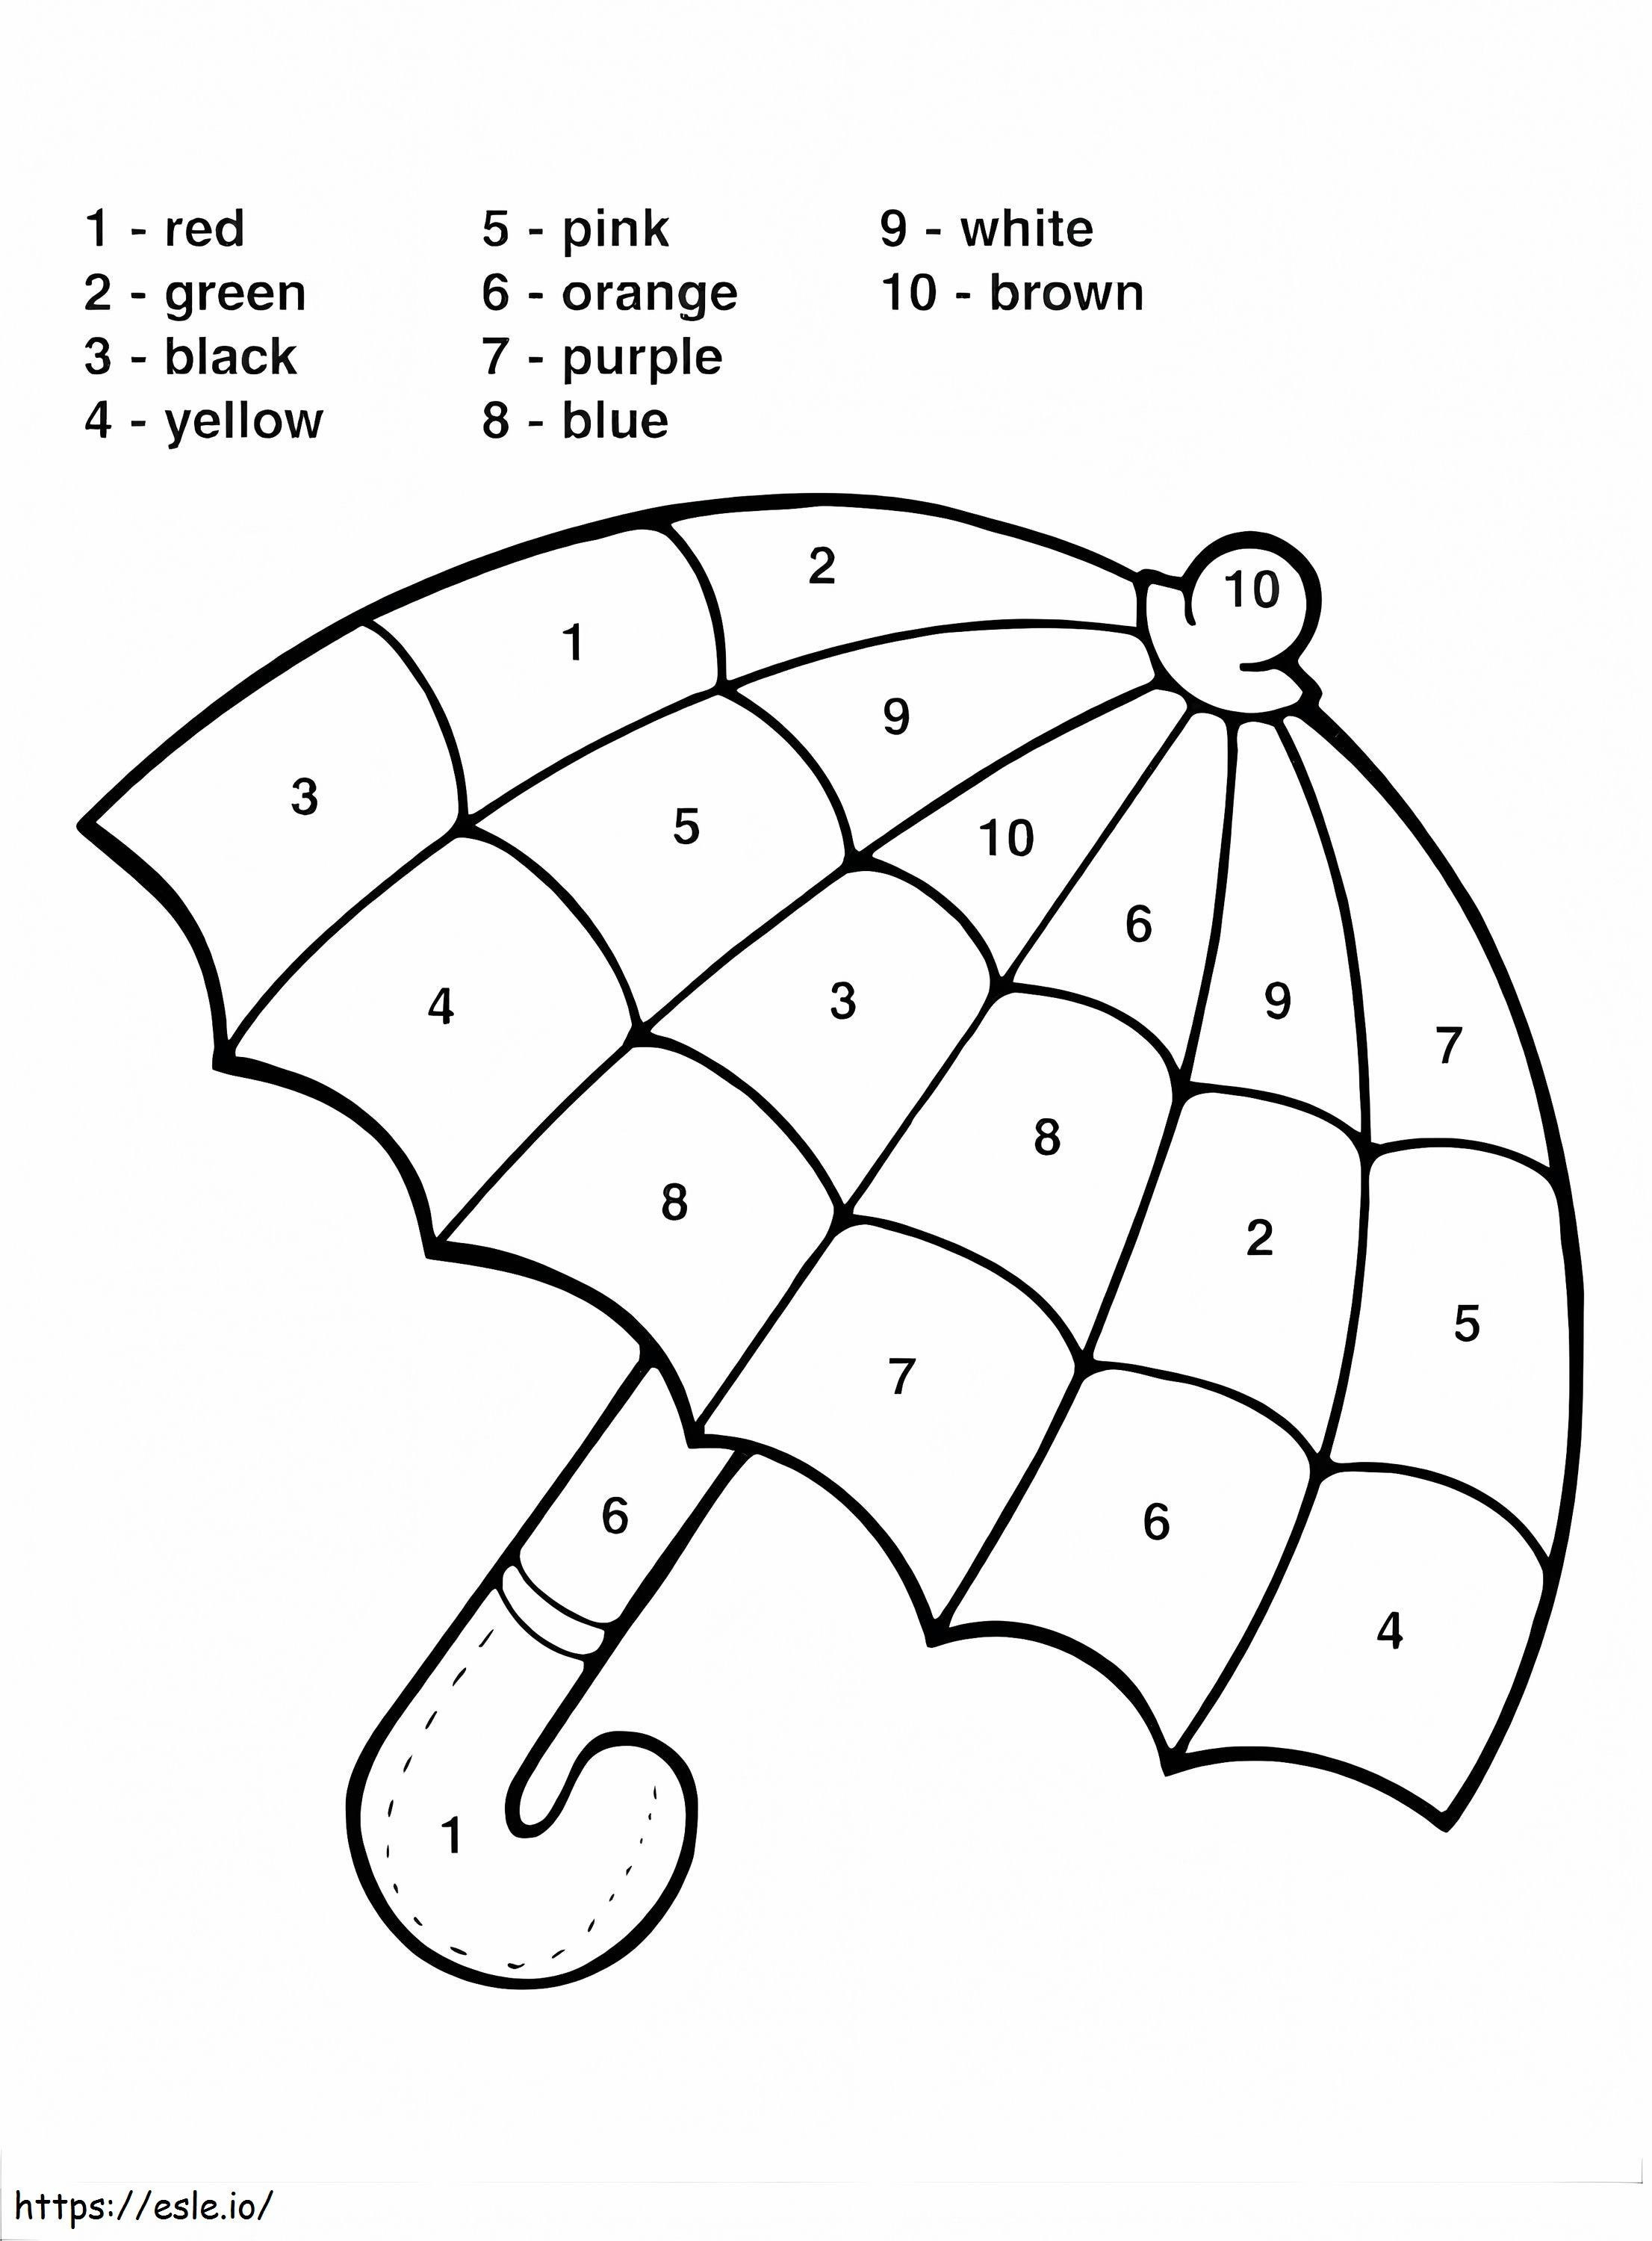 Coloriage 1573087398 Feuilles d'exercices de coloriage par numéros Feuilles d'exercices de mathématiques couleur par numéros pour la maternelle Feuilles d'exercices de coloriage par numéros Numéros de couleur Feuilles d'exercices de coloriage mathématiques de 3e année pour la maternelle à imprimer dessin